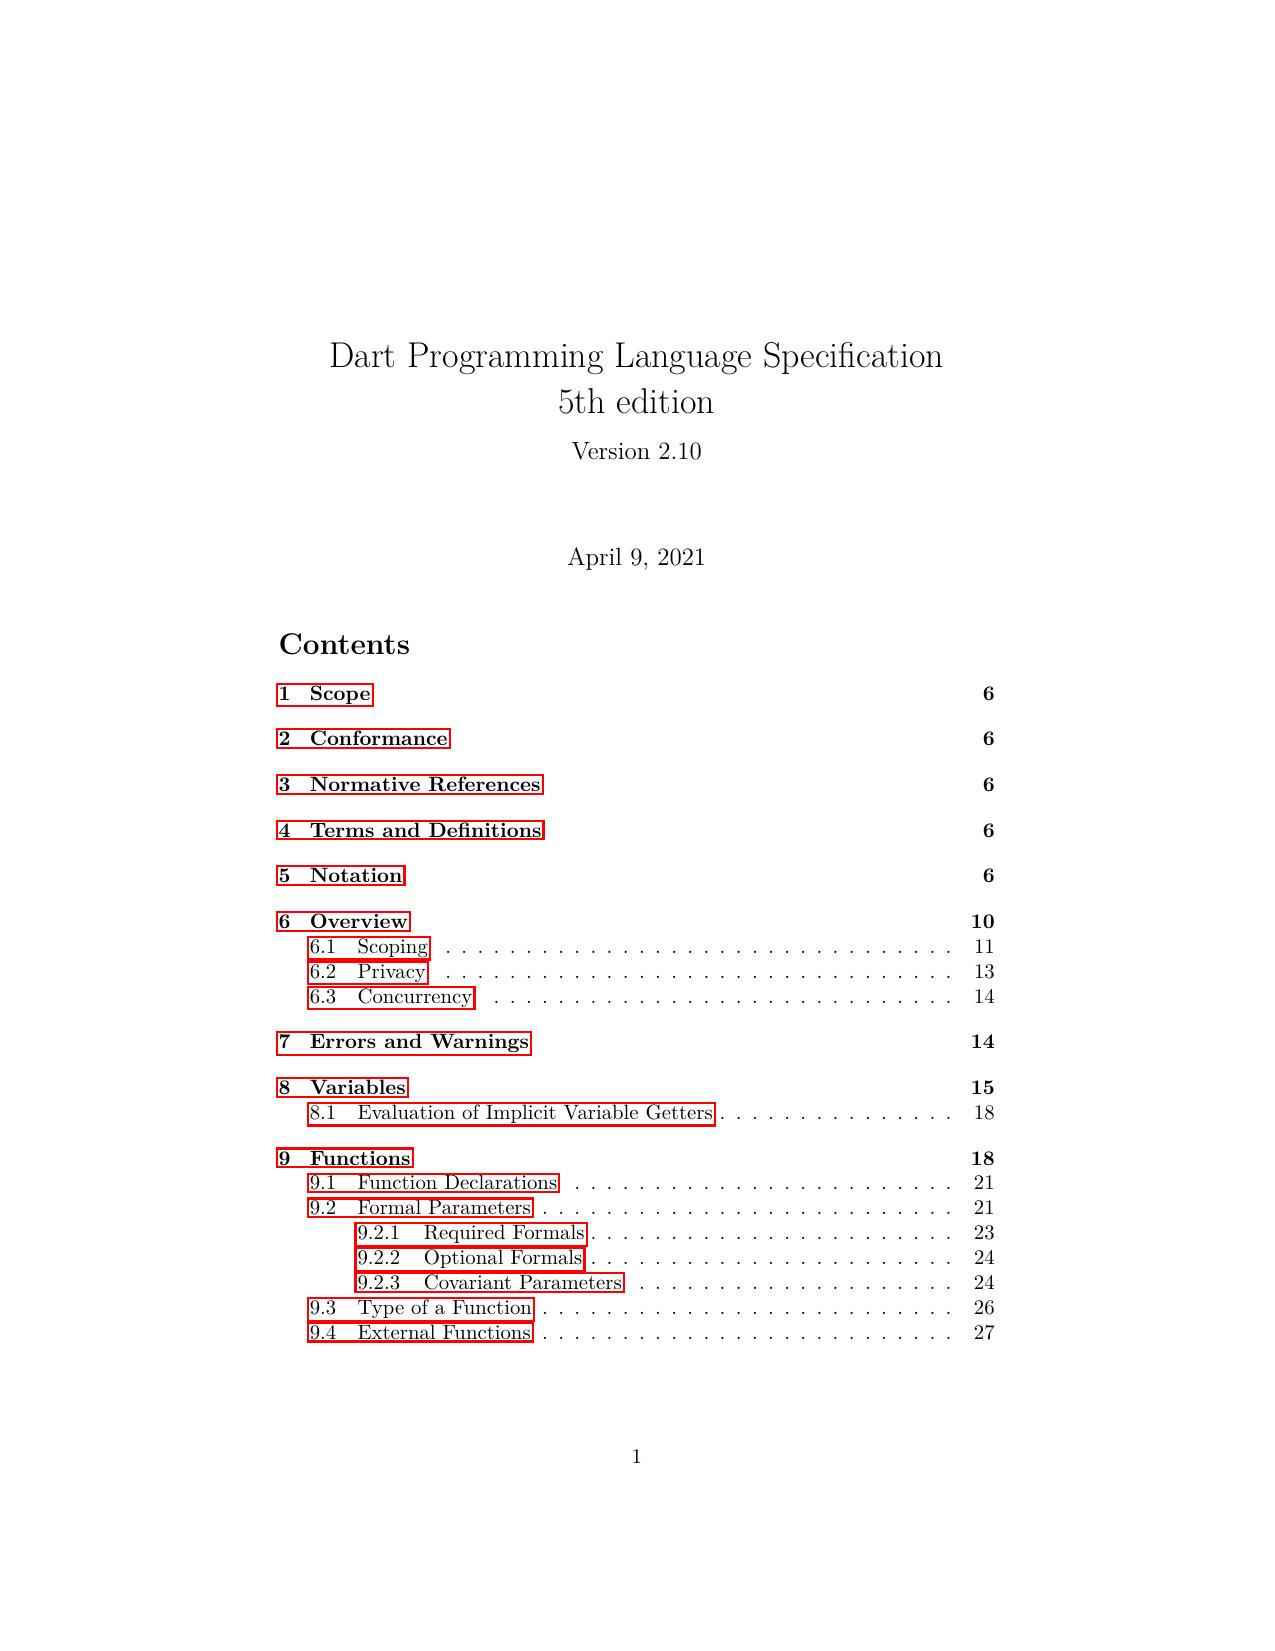 Dart Programming Language Specification - Draft Version v2.10